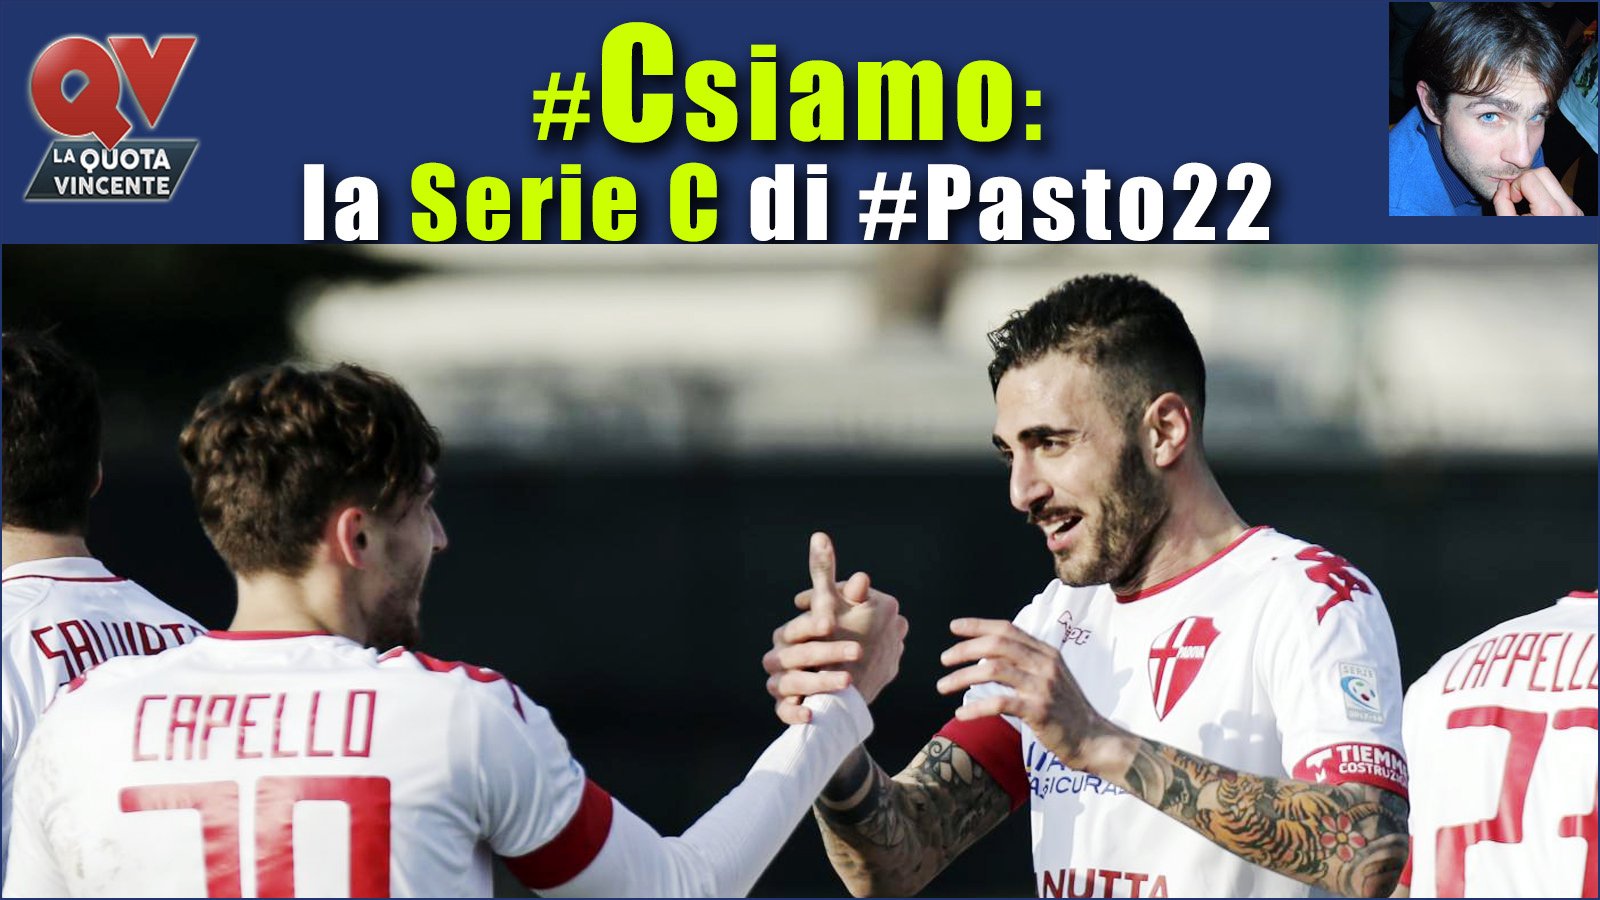 Pronostici Serie C sabato 24 febbraio: #Csiamo, il blog di #Pasto22